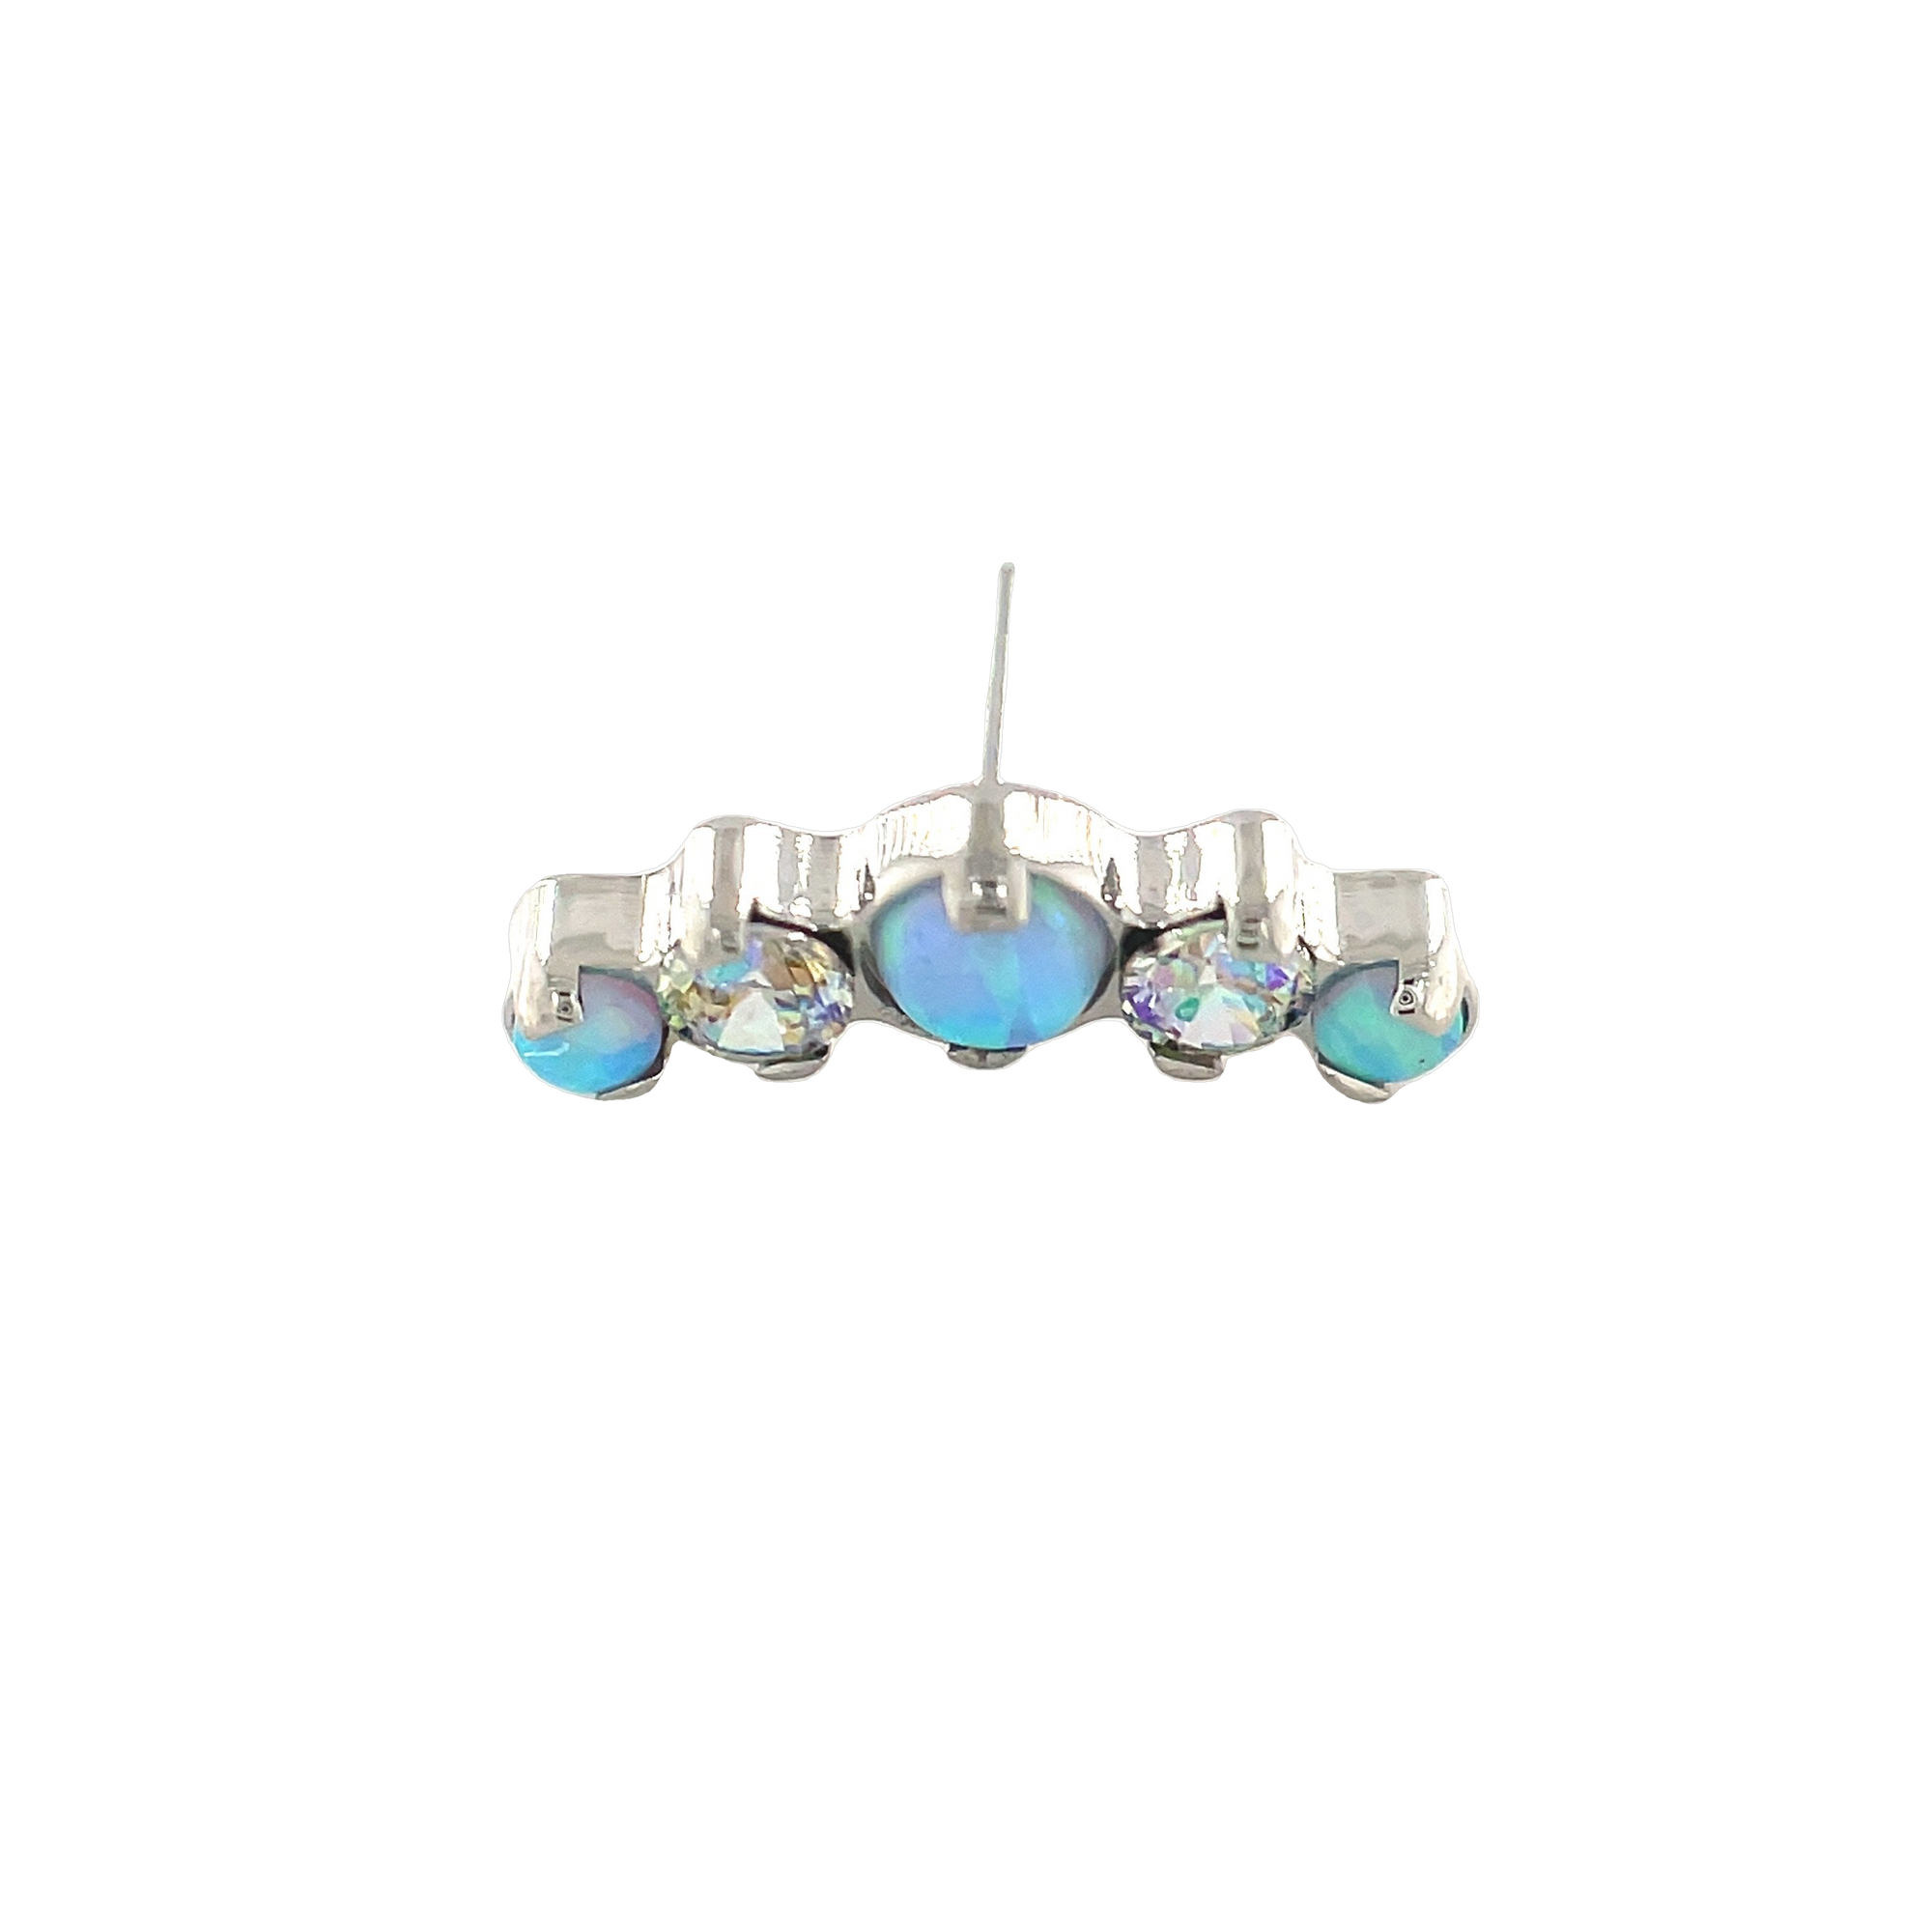 Industrial Strength Odyssey Sky Blue Opal & Shine CZ Prium End - Isha Body Jewellery